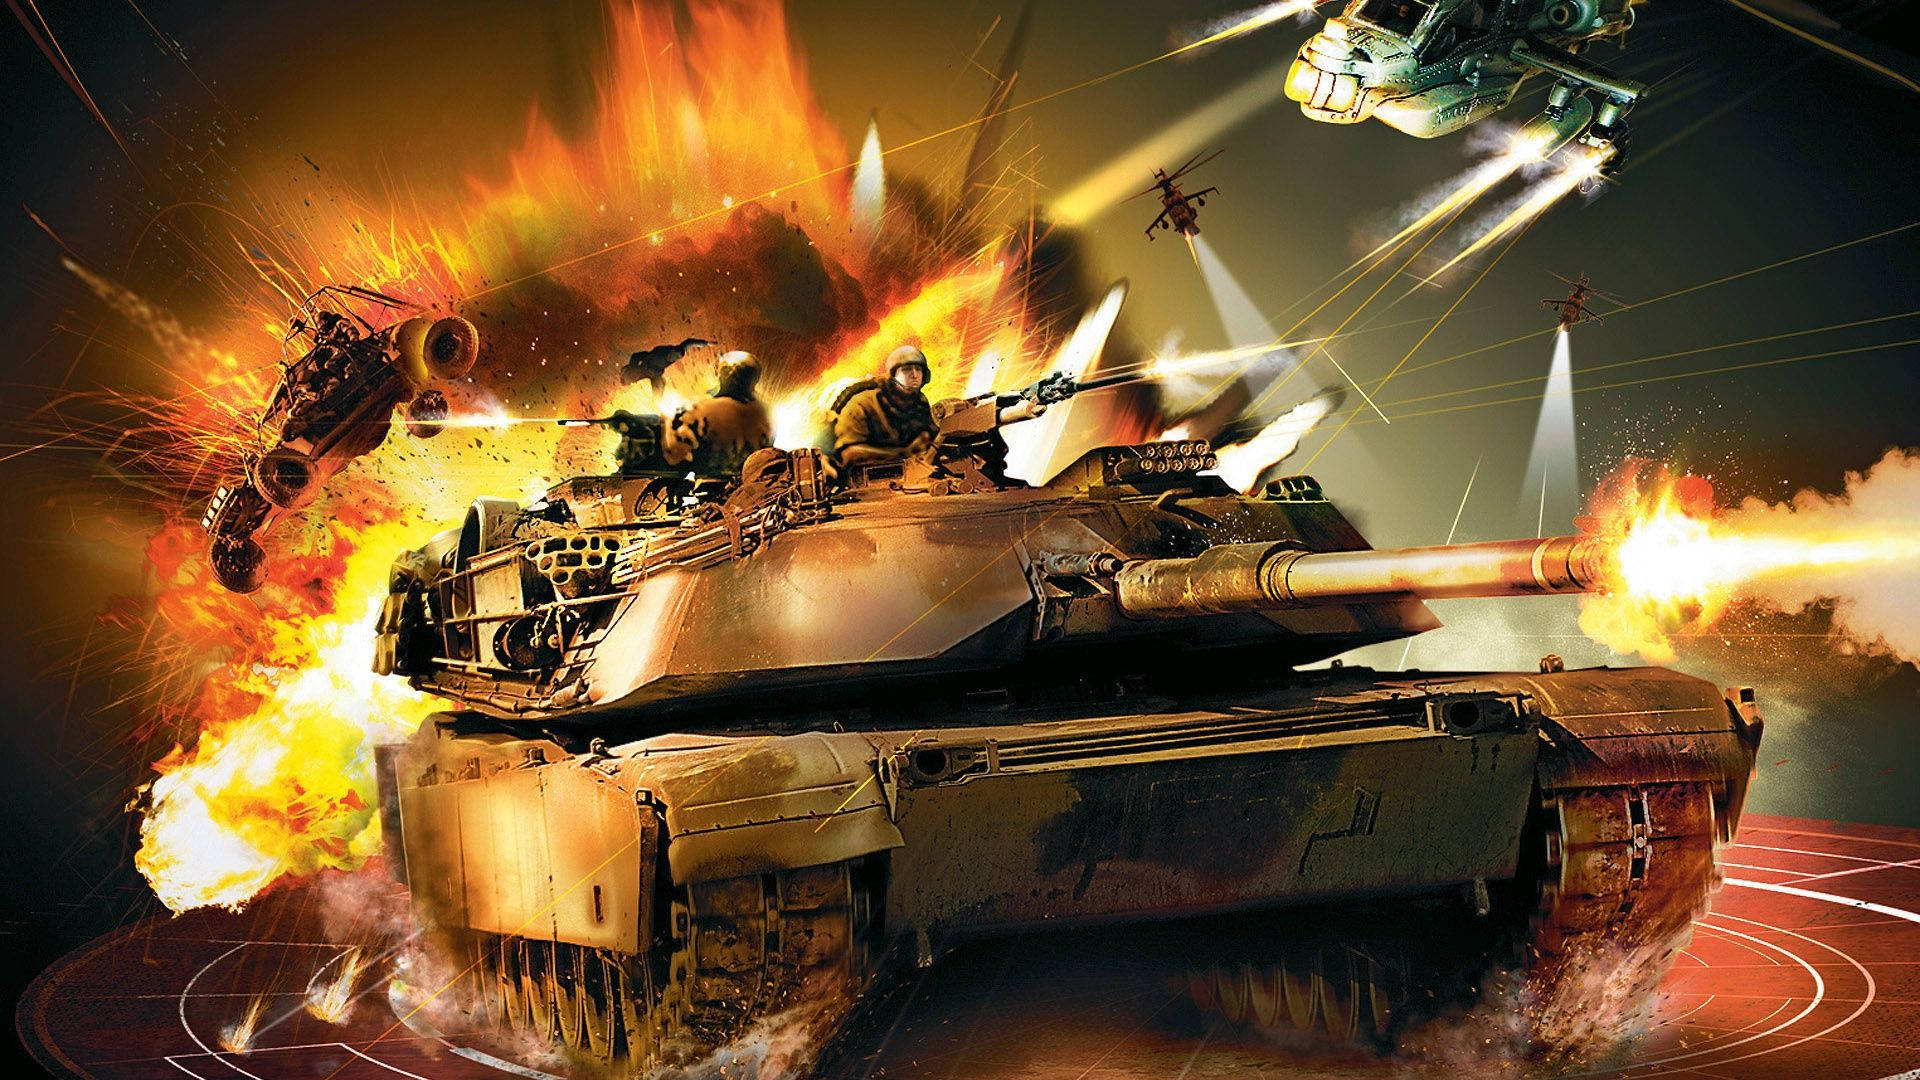 Tank In Battle Field Background